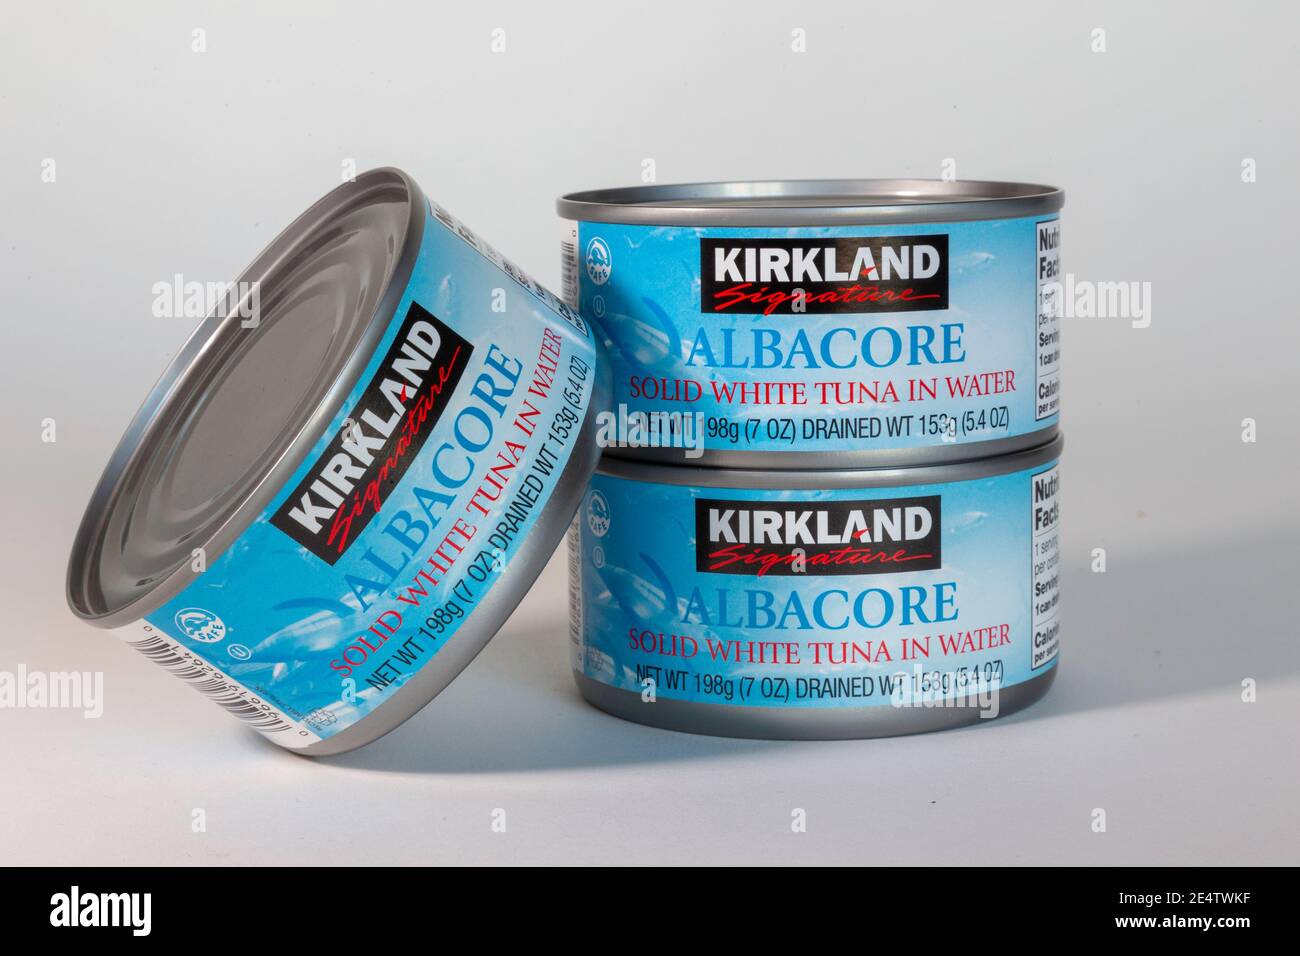 Kirkland brand Albacore Tuna, USA Stock Photo